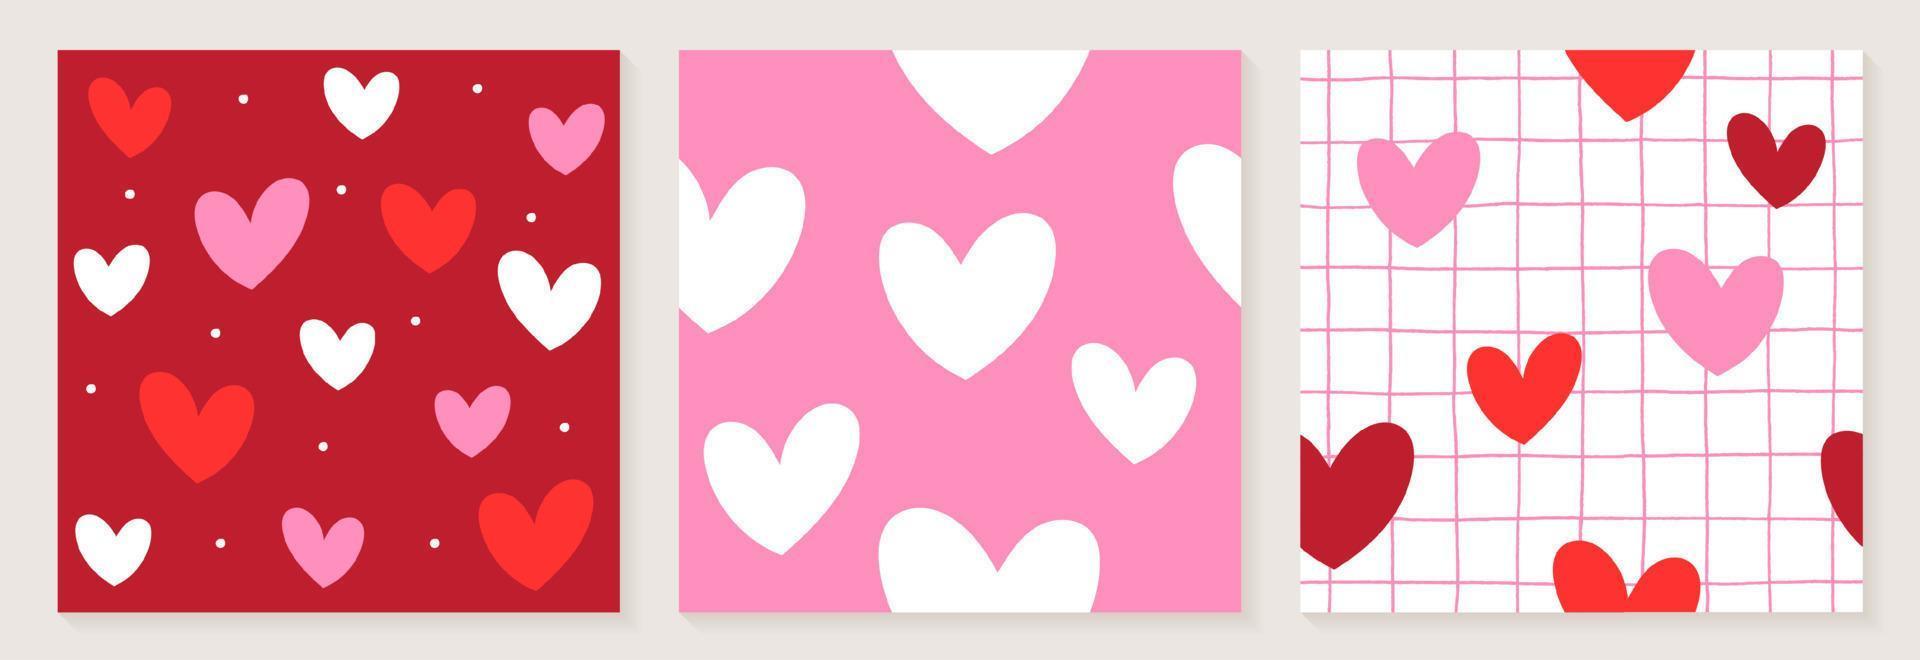 schattig hart valentines liefde wit rood roze kleur confetti vlakke stijl stof textiel raster lijn controleren naadloze patroon achtergrond zomer lente wenskaart set collectie bundel vectorillustratie vector